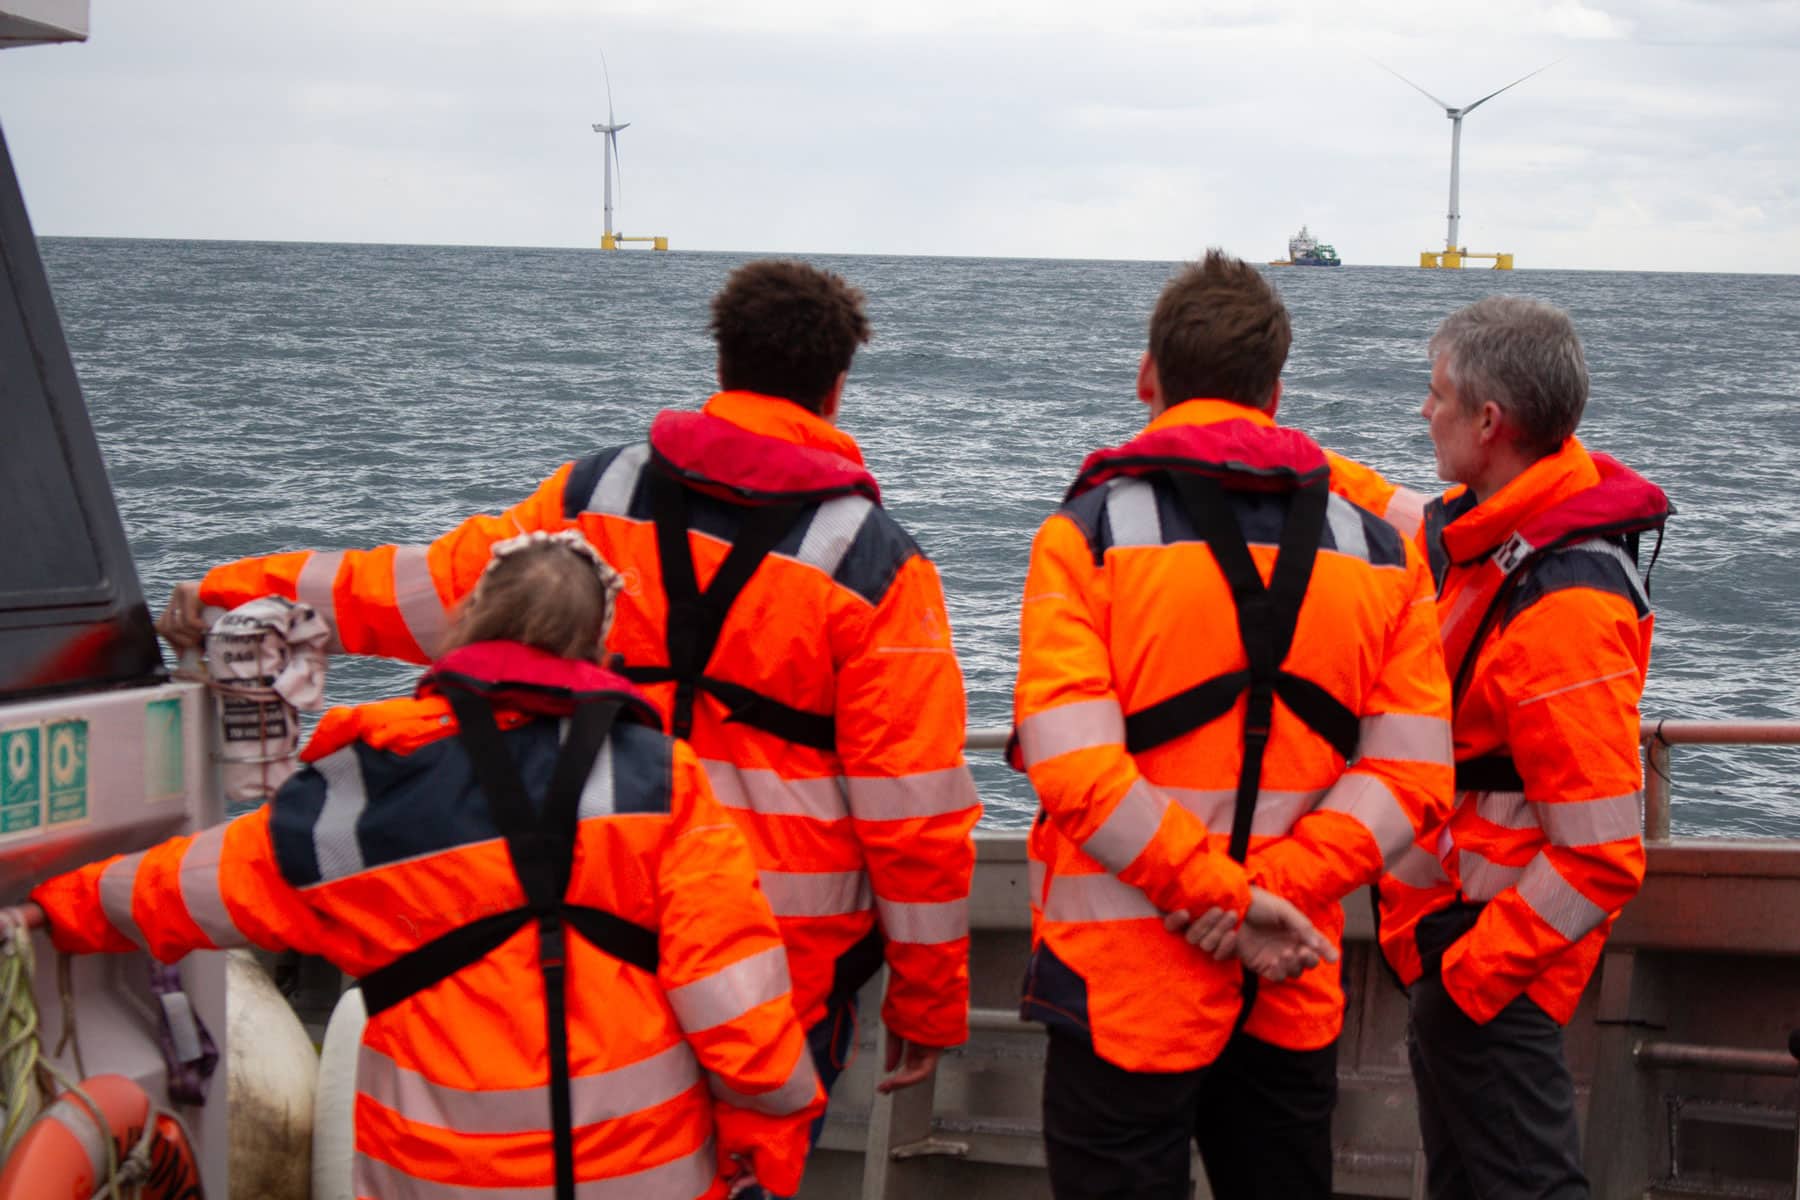 Impulso significativo para a energia eólica flutuante no Reino Unido: projeto emblemático Green Volt obtém autorização offshore